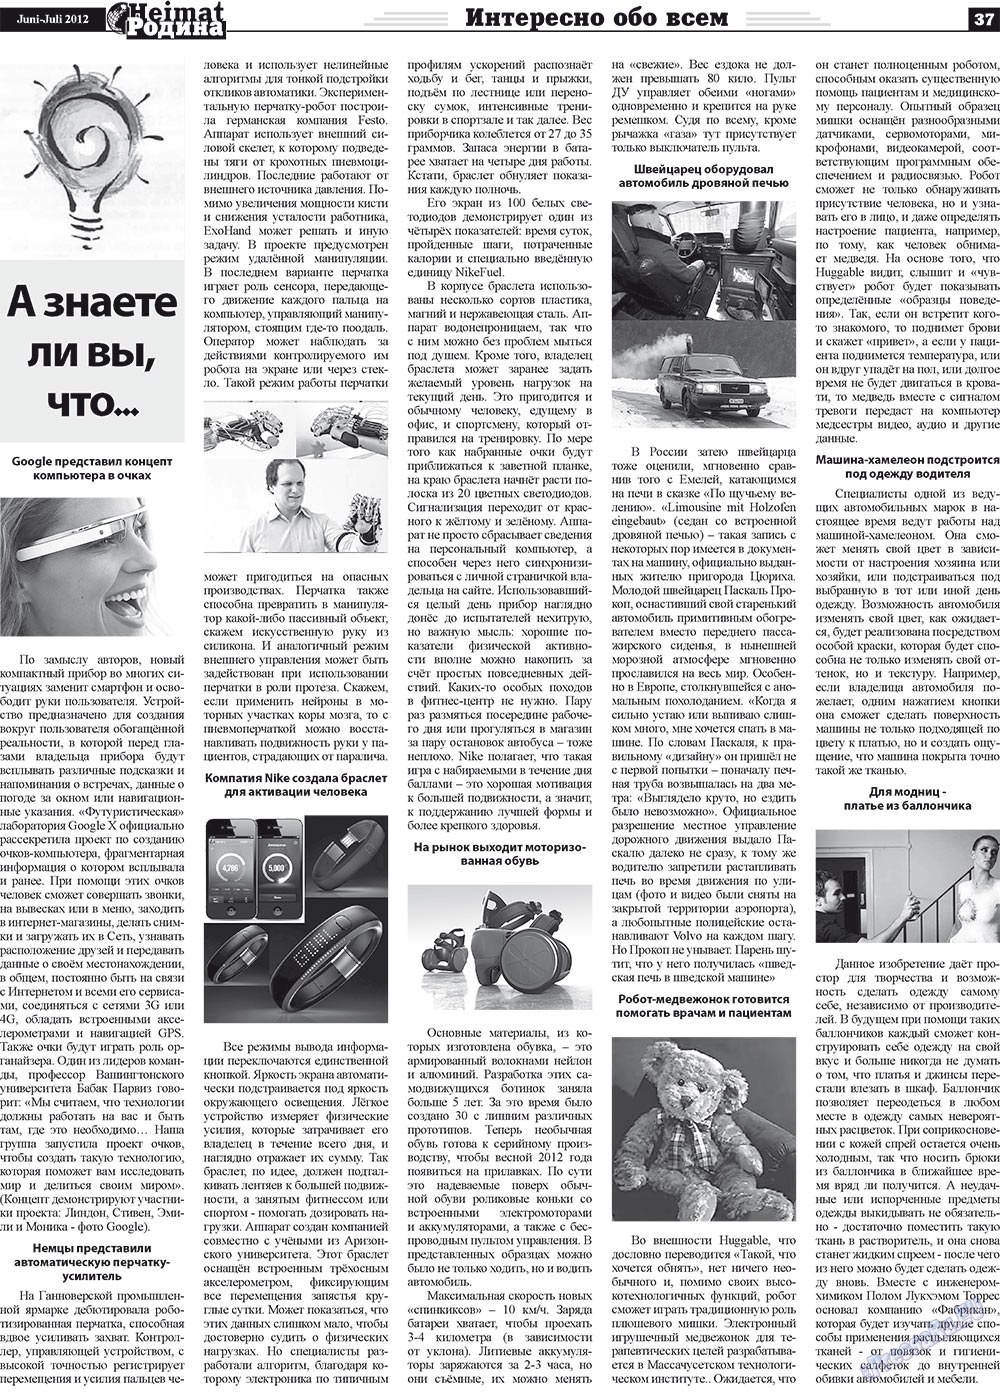 Heimat-Родина (газета). 2012 год, номер 5, стр. 37